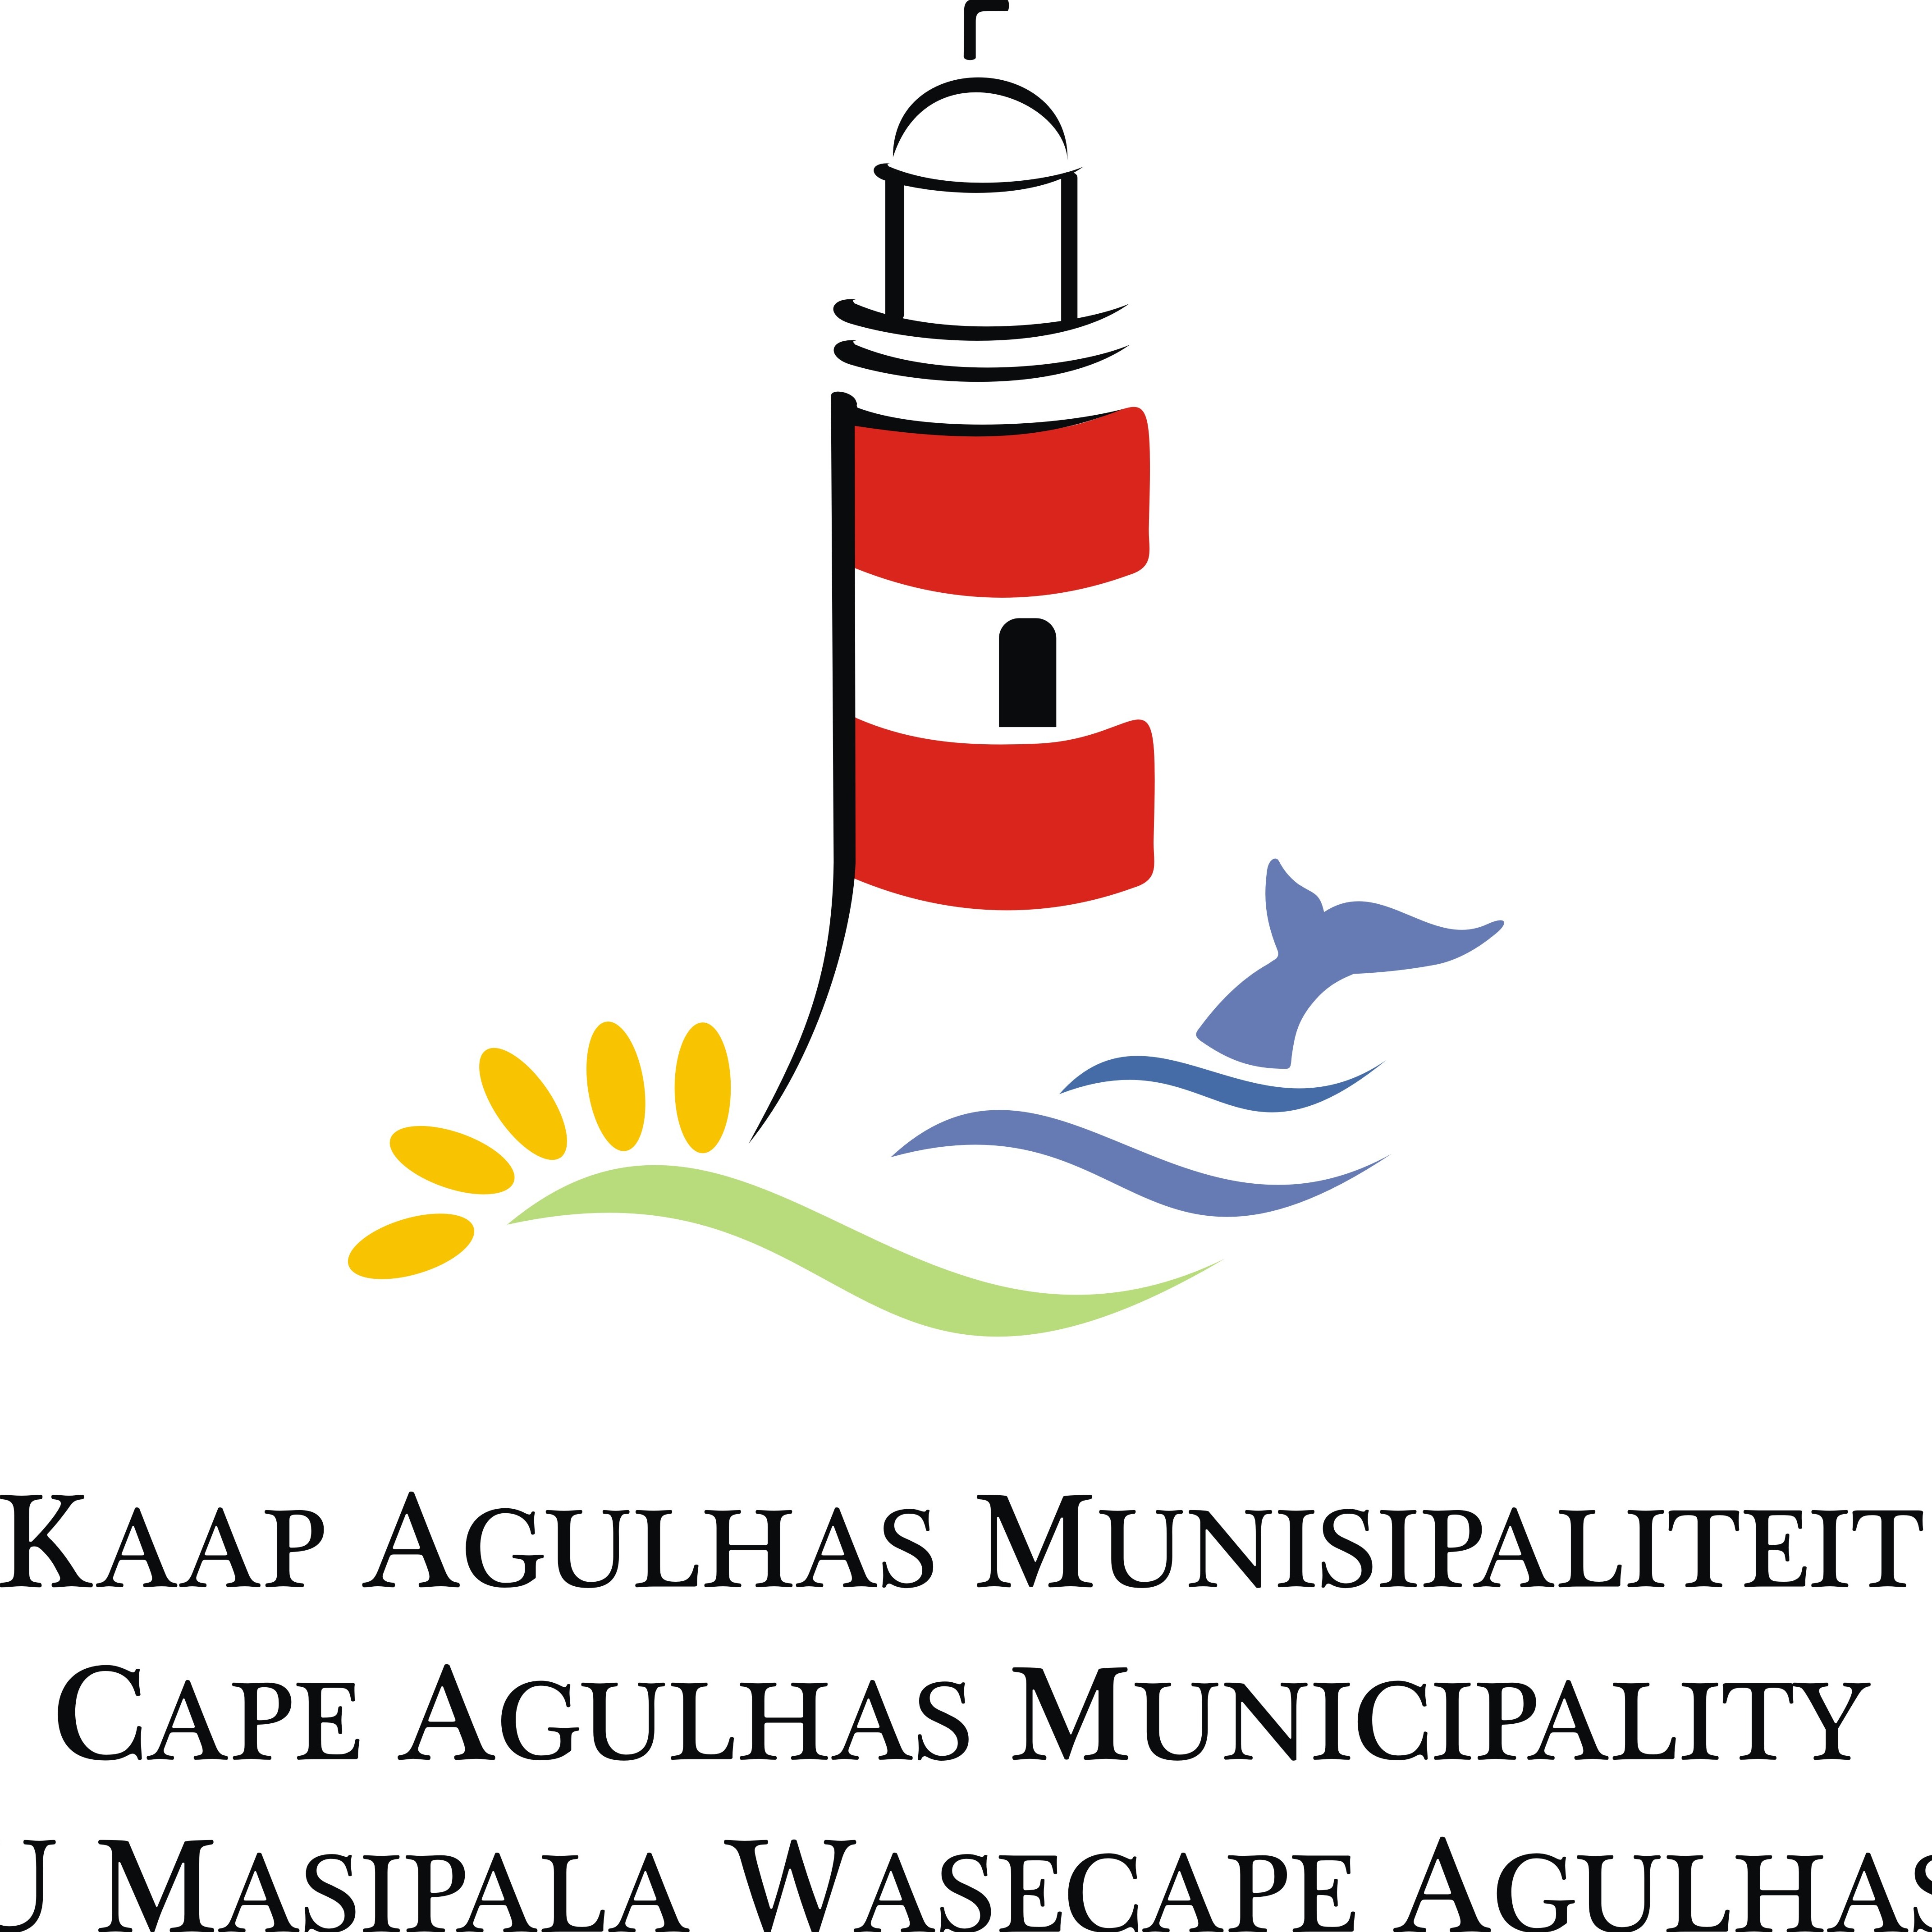 Cape Agulhas Municipality